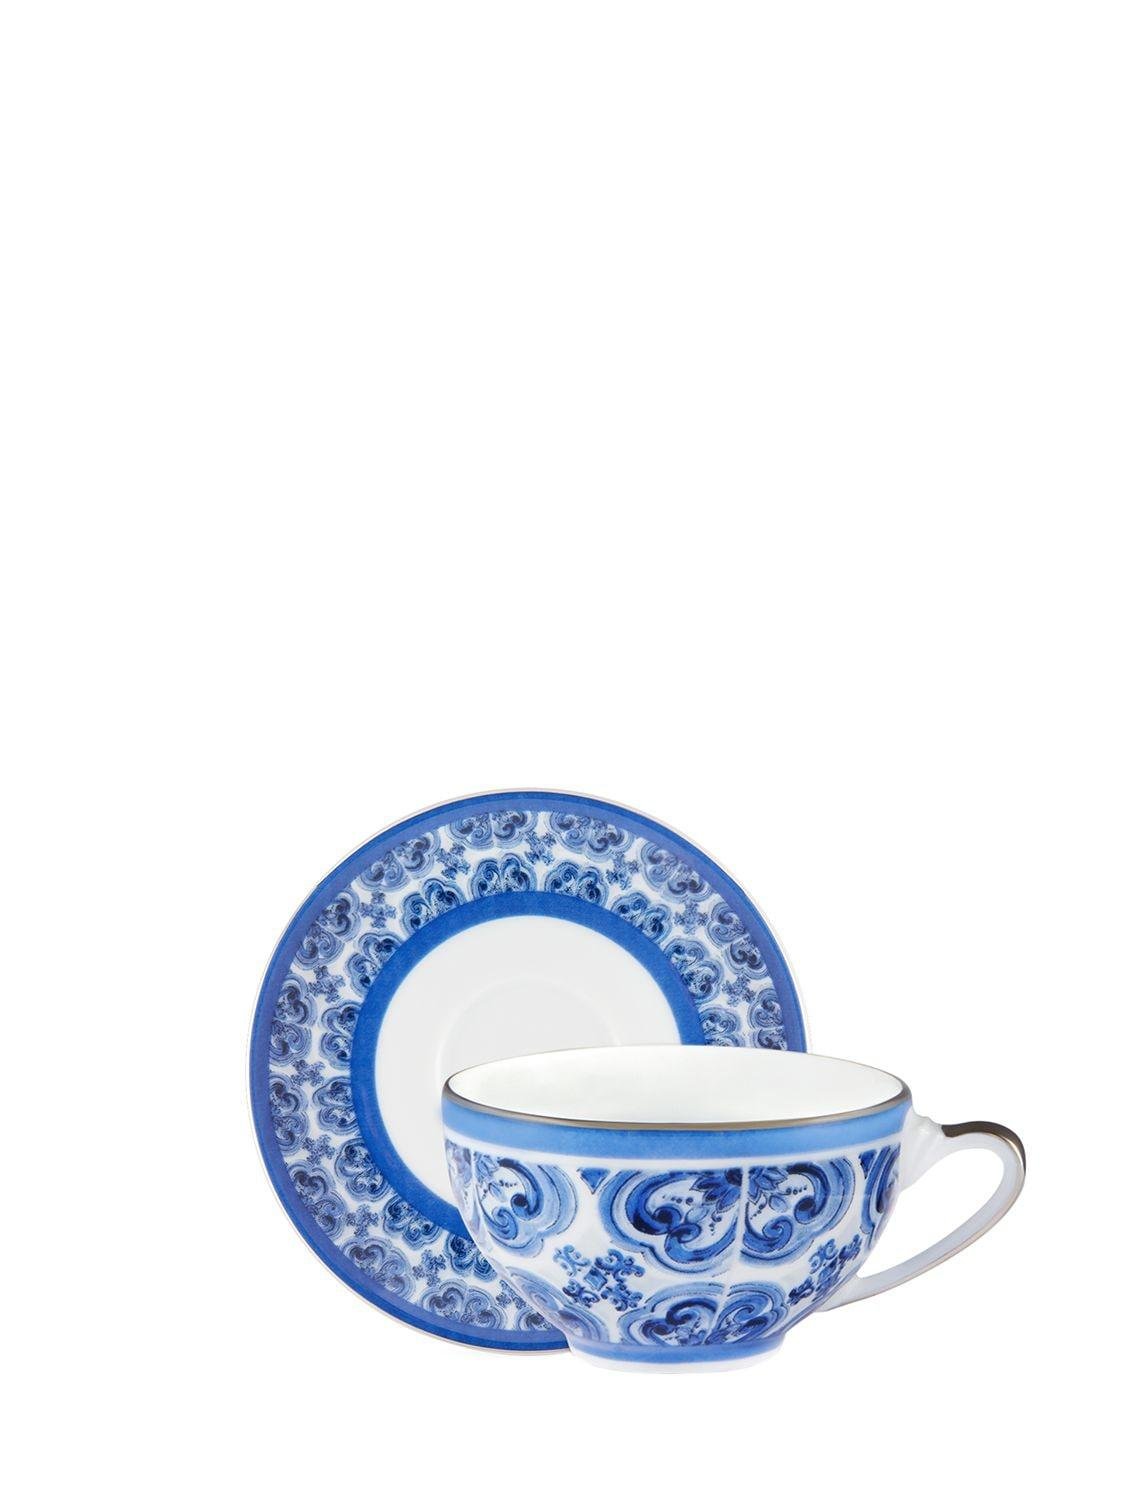 Blu Mediterraneo Espresso Cup & Saucer by DOLCE&GABBANA